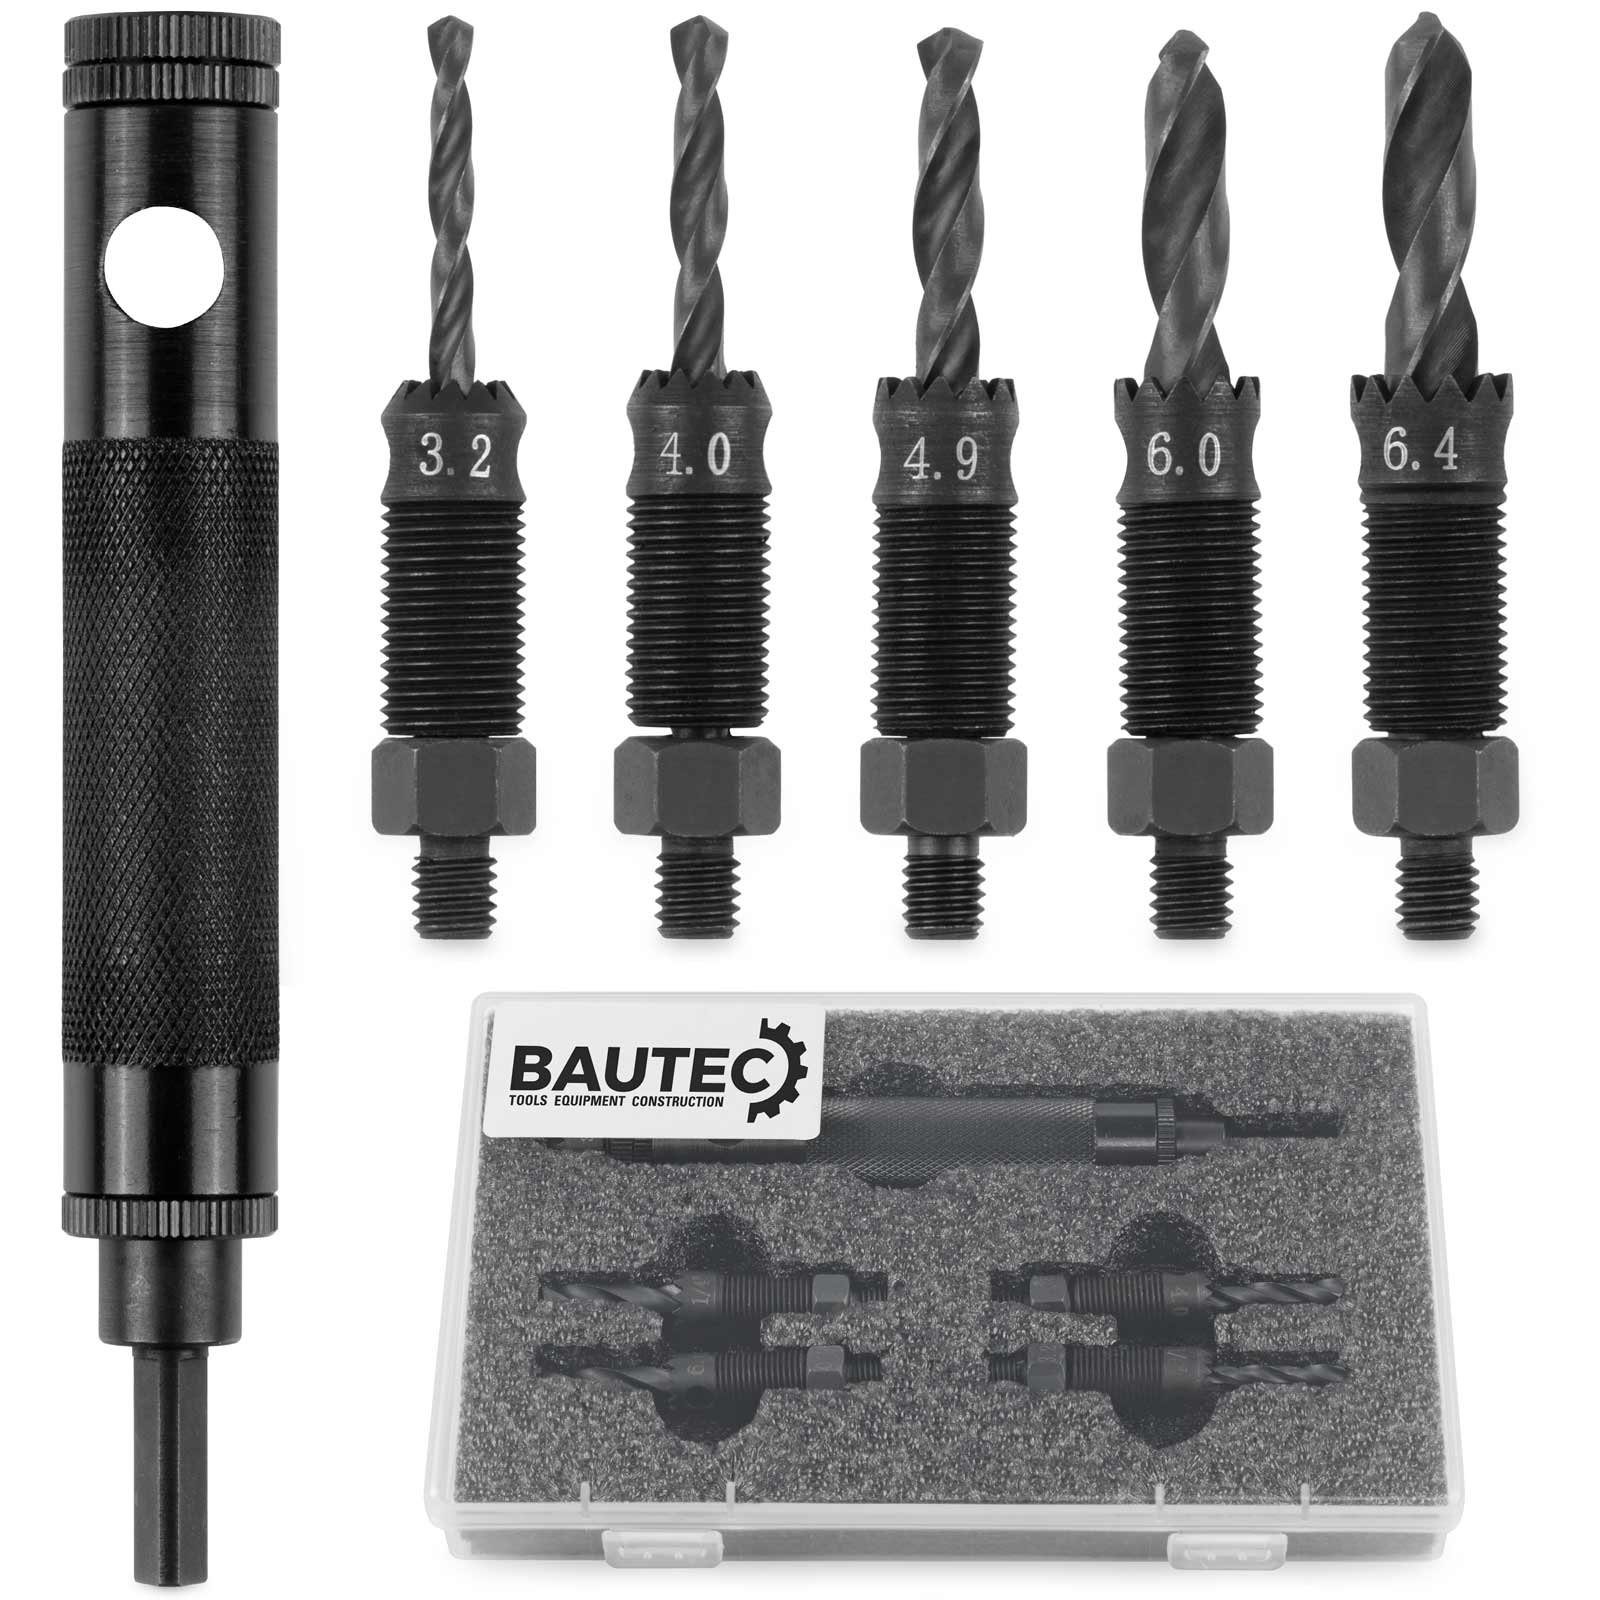 Blindnieten von Werkzeug zum BAUTEC für » Packung mm, Blindnieten 3,2-6,4 Entfernen Ø Blindnietzange